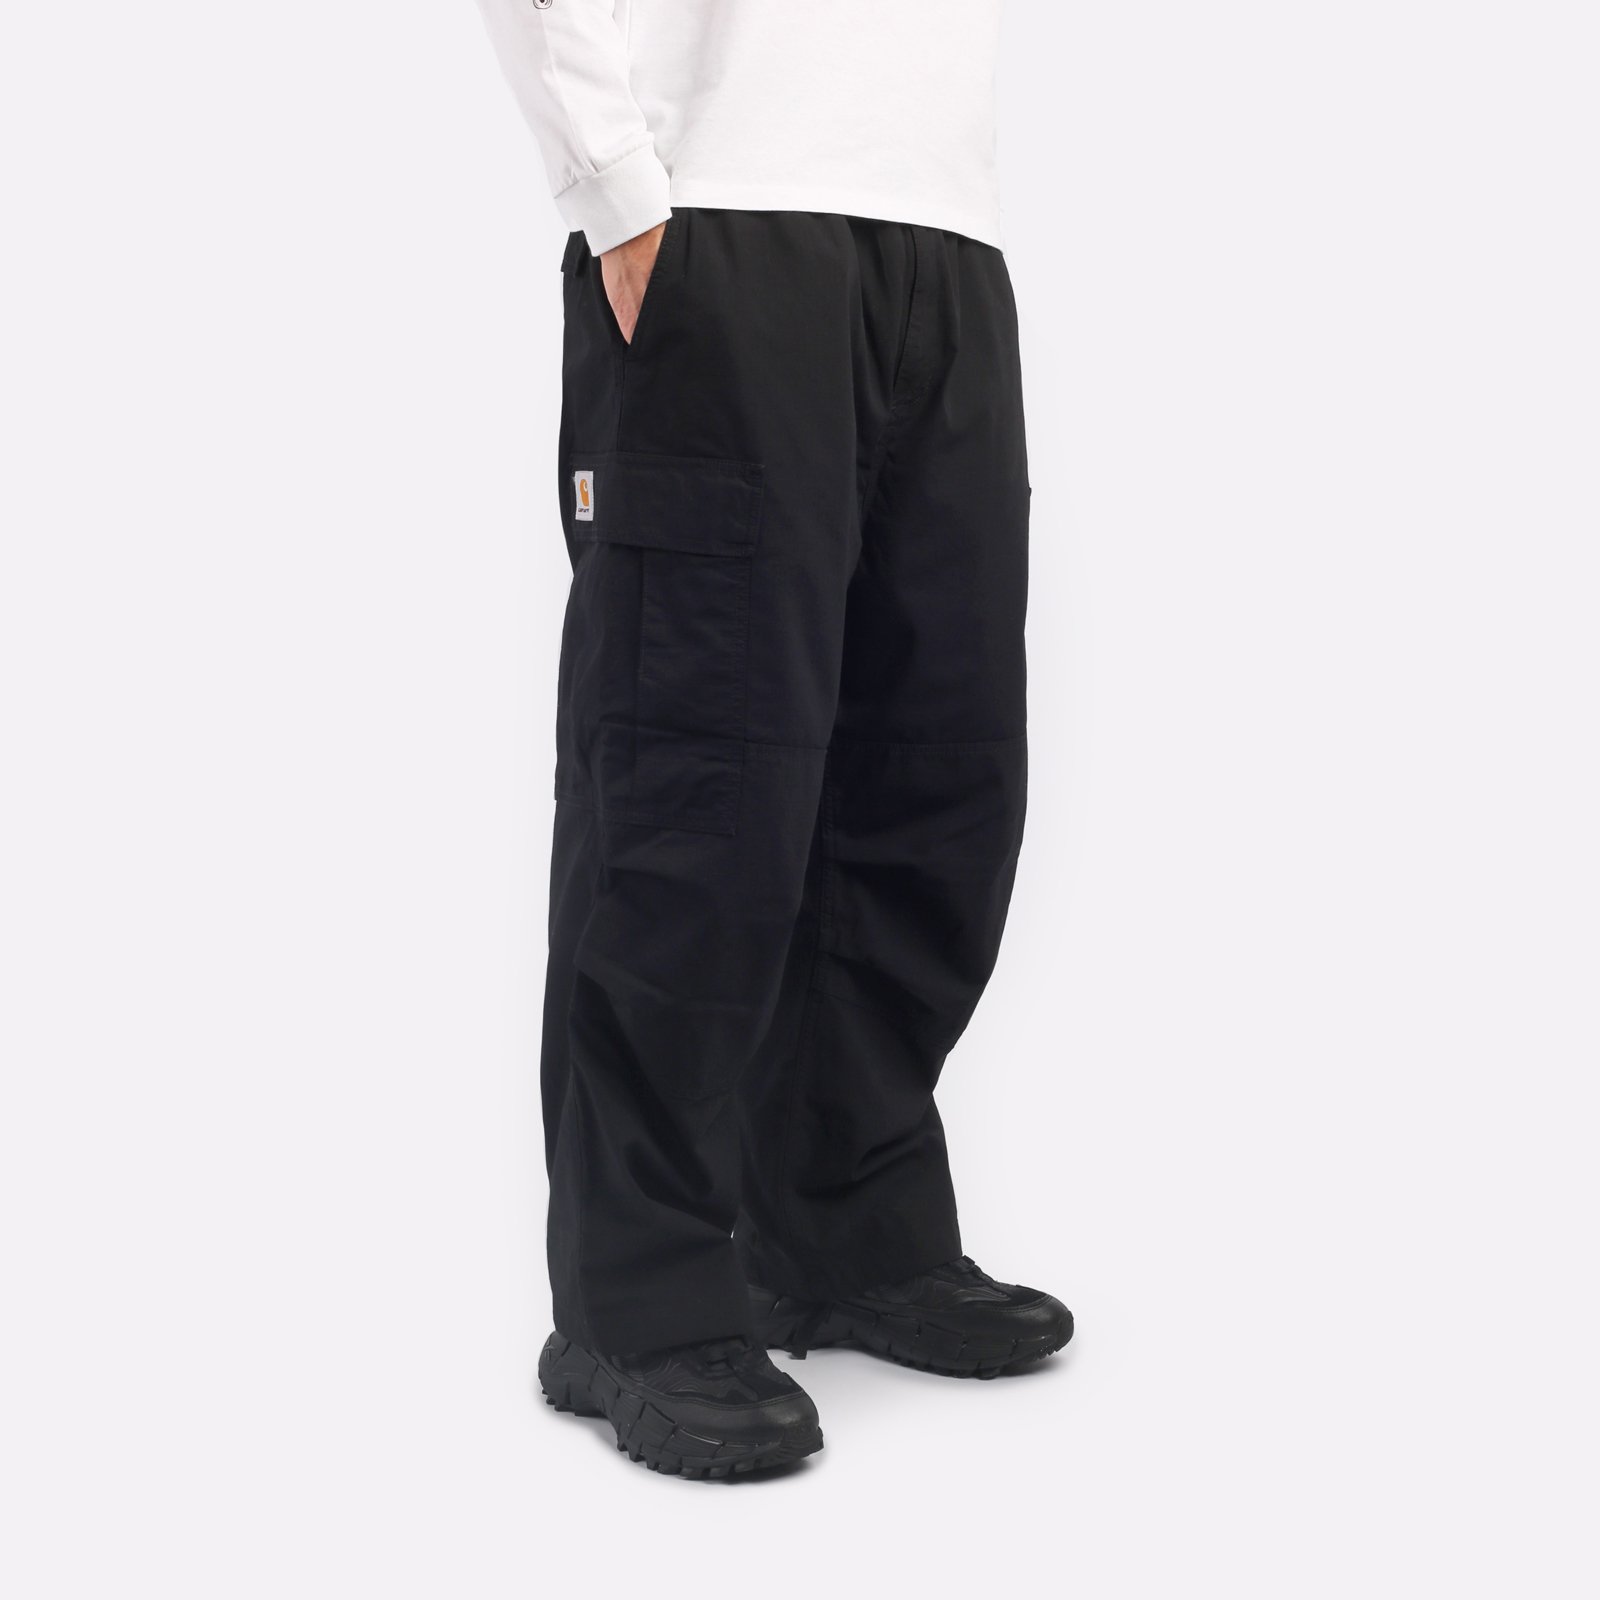 мужские брюки Carhartt WIP Jet Cargo Pant  (I032967-black)  - цена, описание, фото 3